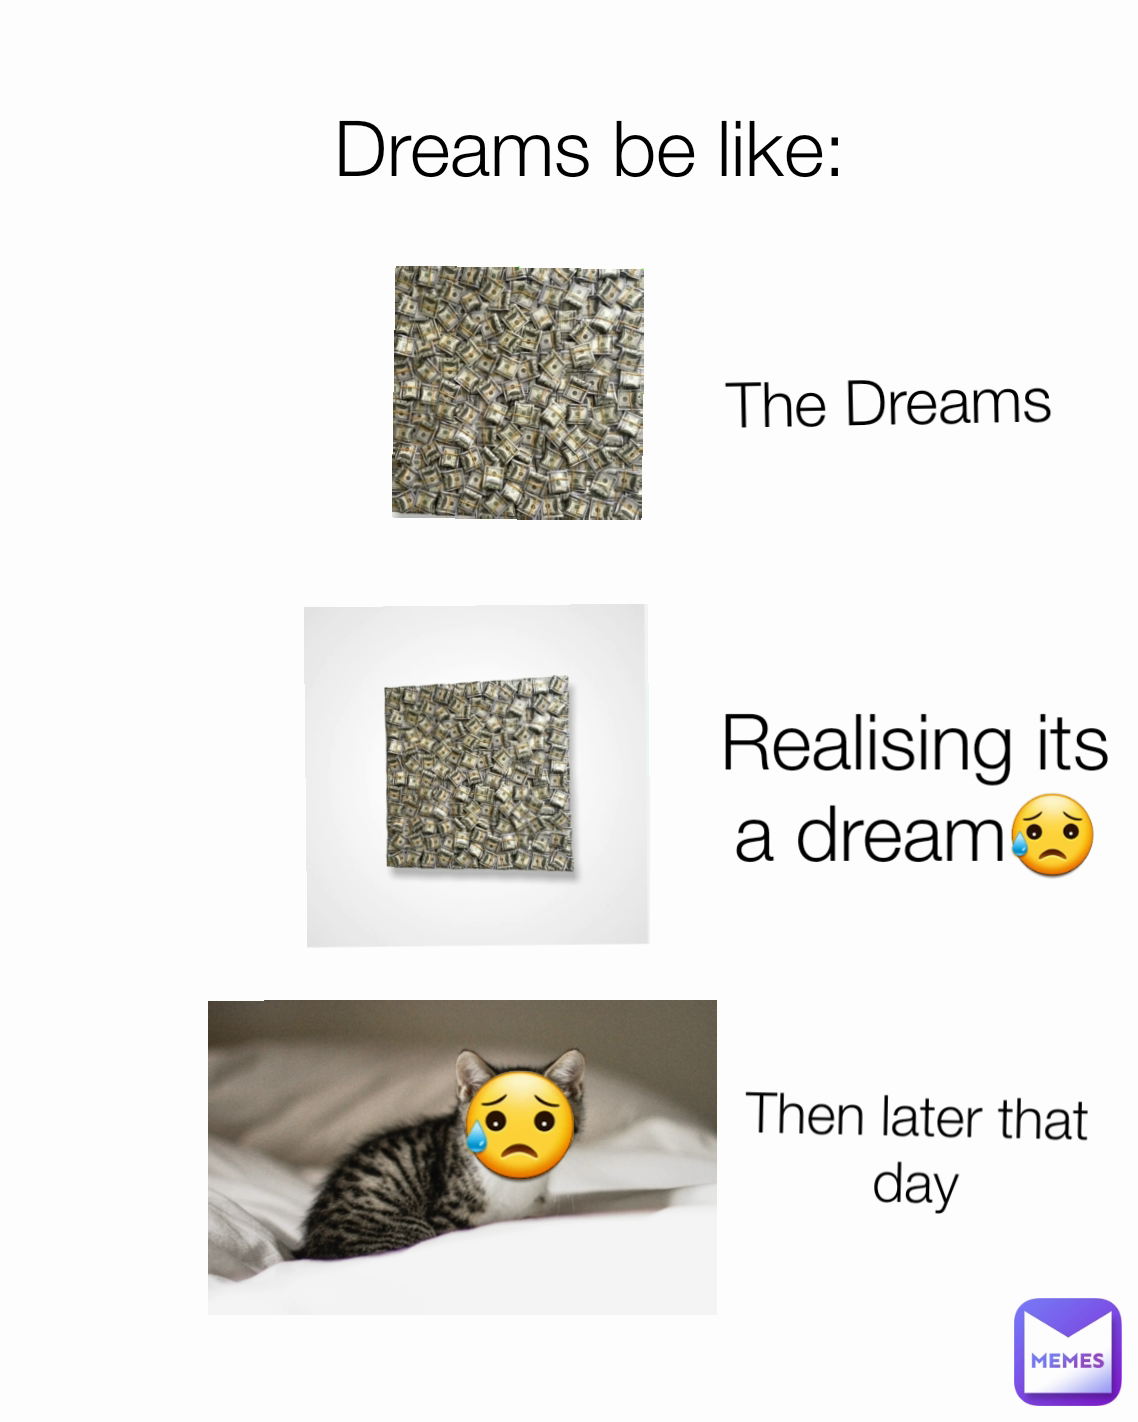 Pin on Memes and Dreams